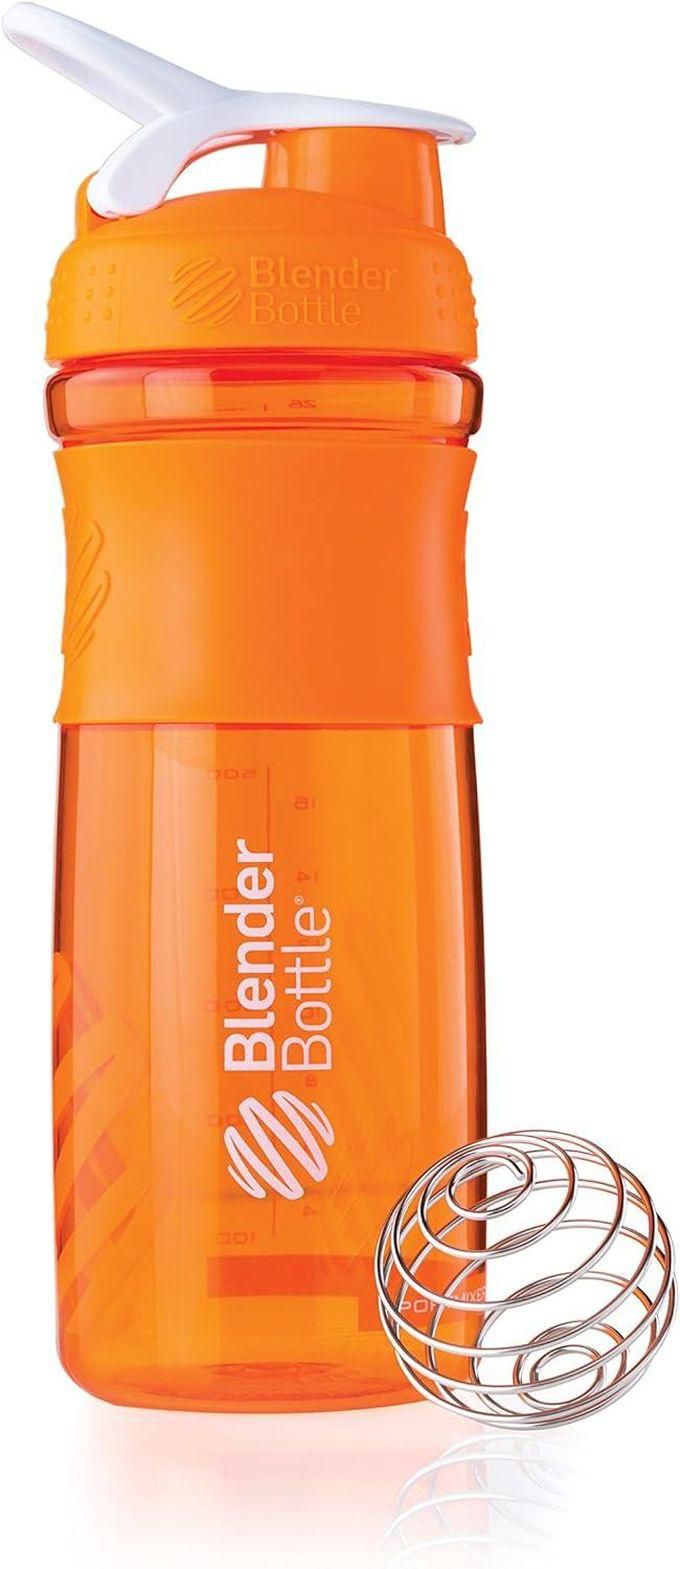 Blenderbottle Protein shaker from Blender Bottle, orange